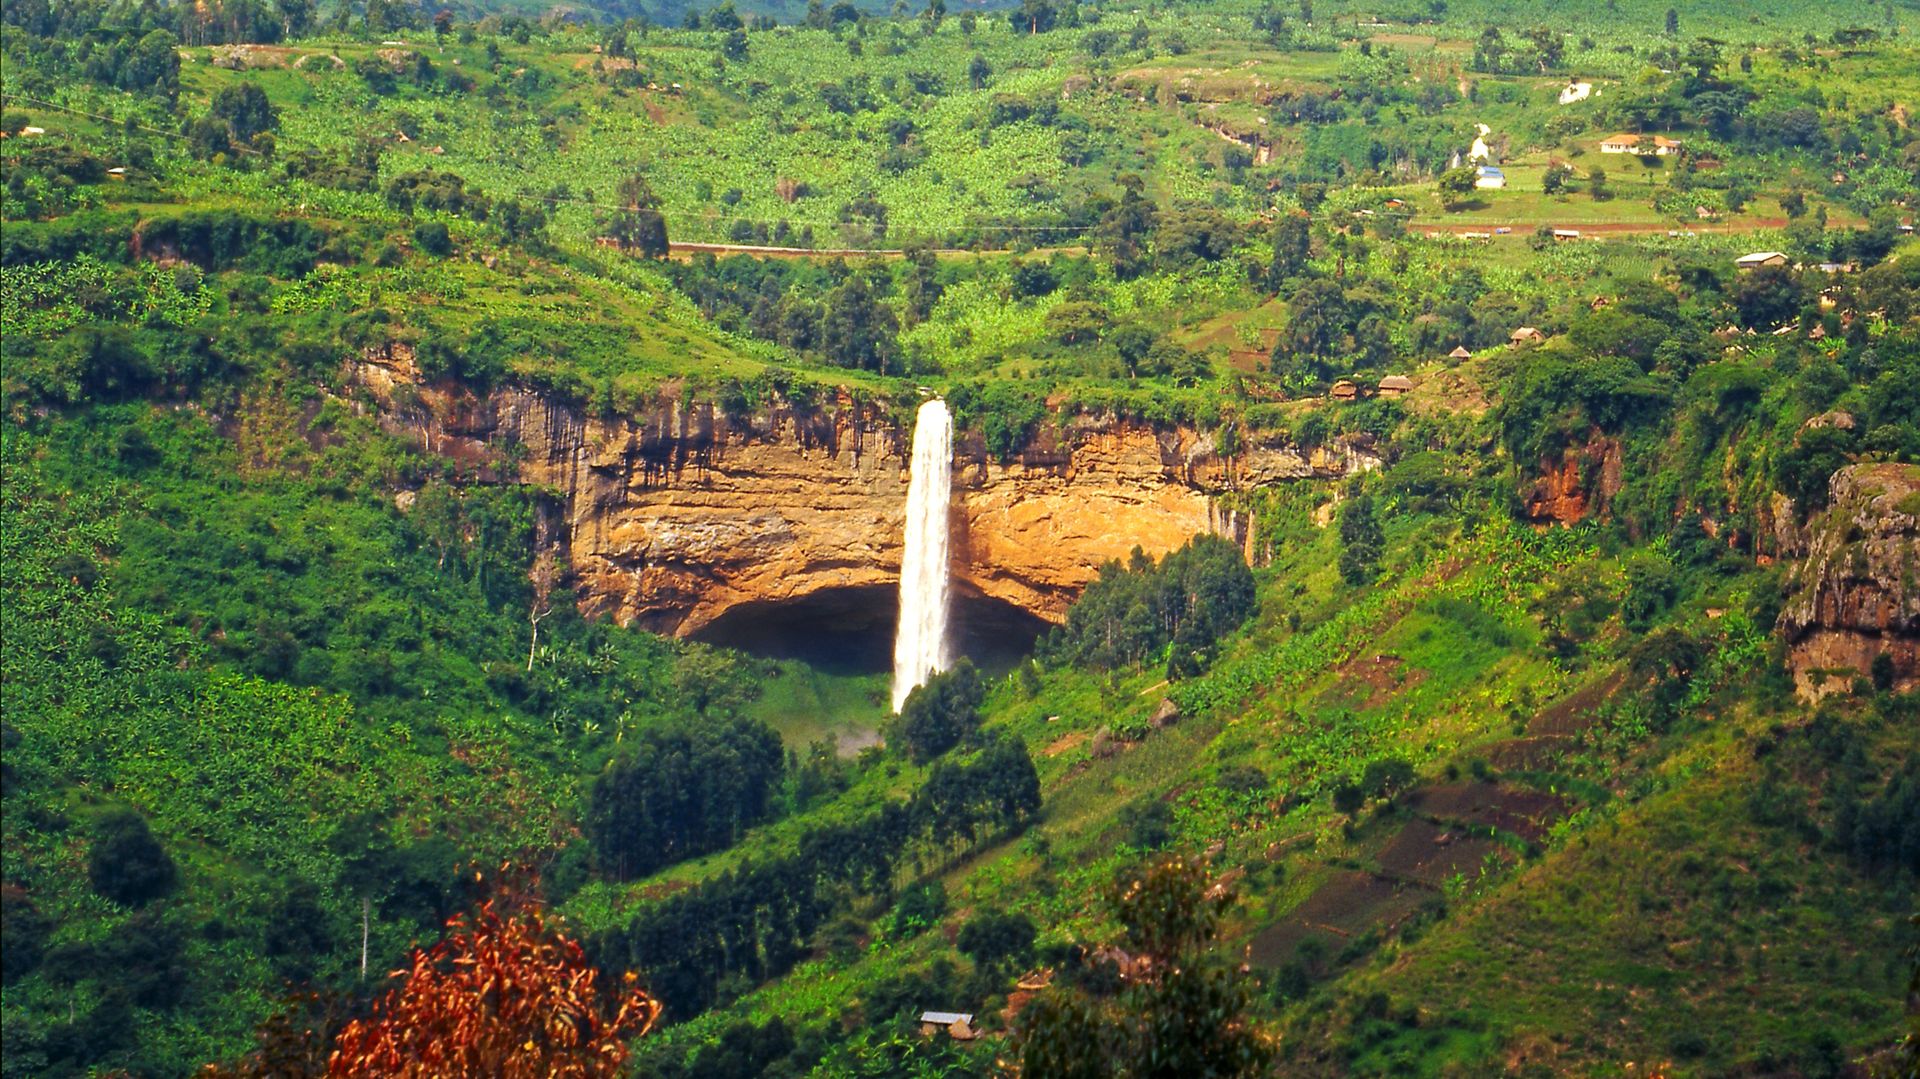 Sipi Falls Uganda